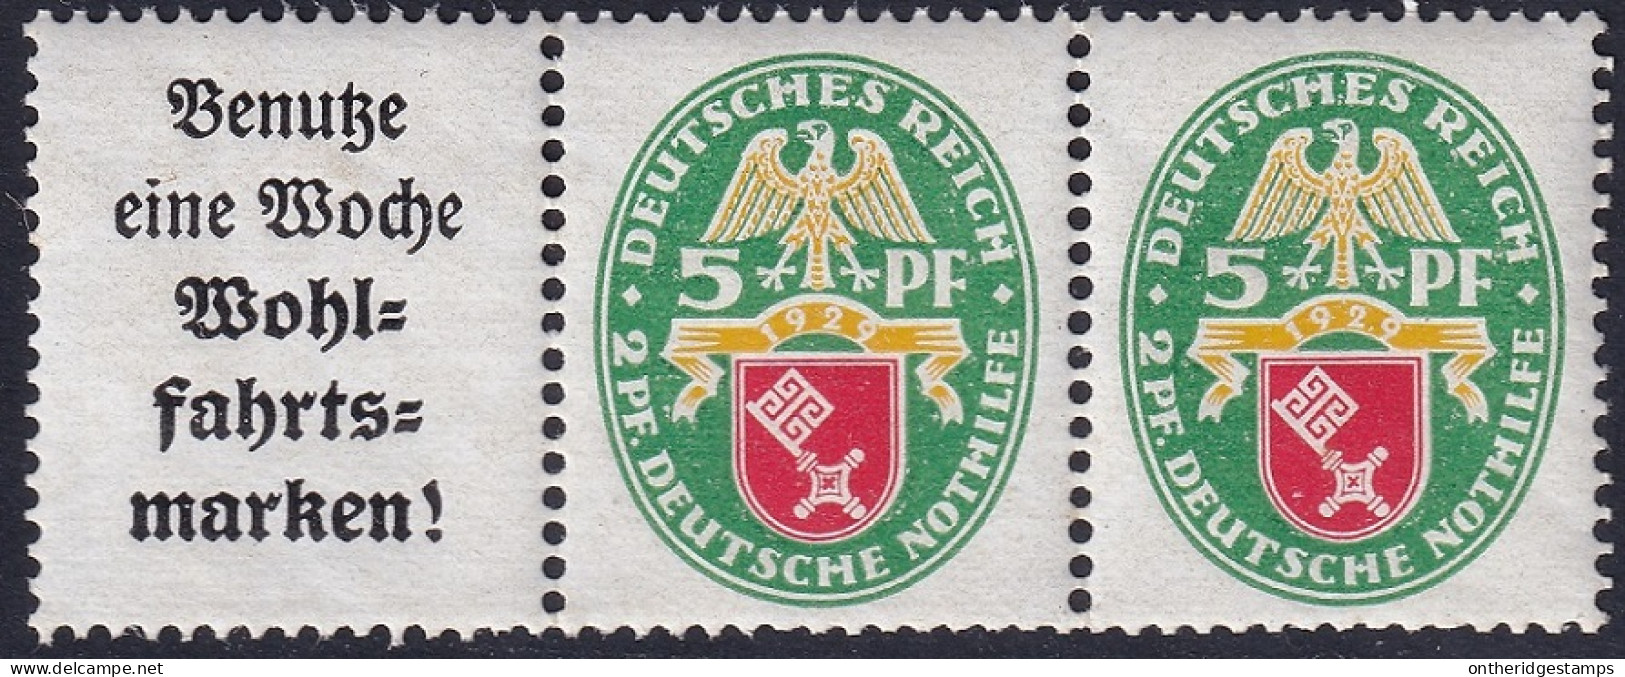 Germany 1929 Sc B28a Deutschland Mi W35 Pair & Label From Booklet MNH** - Markenheftchen